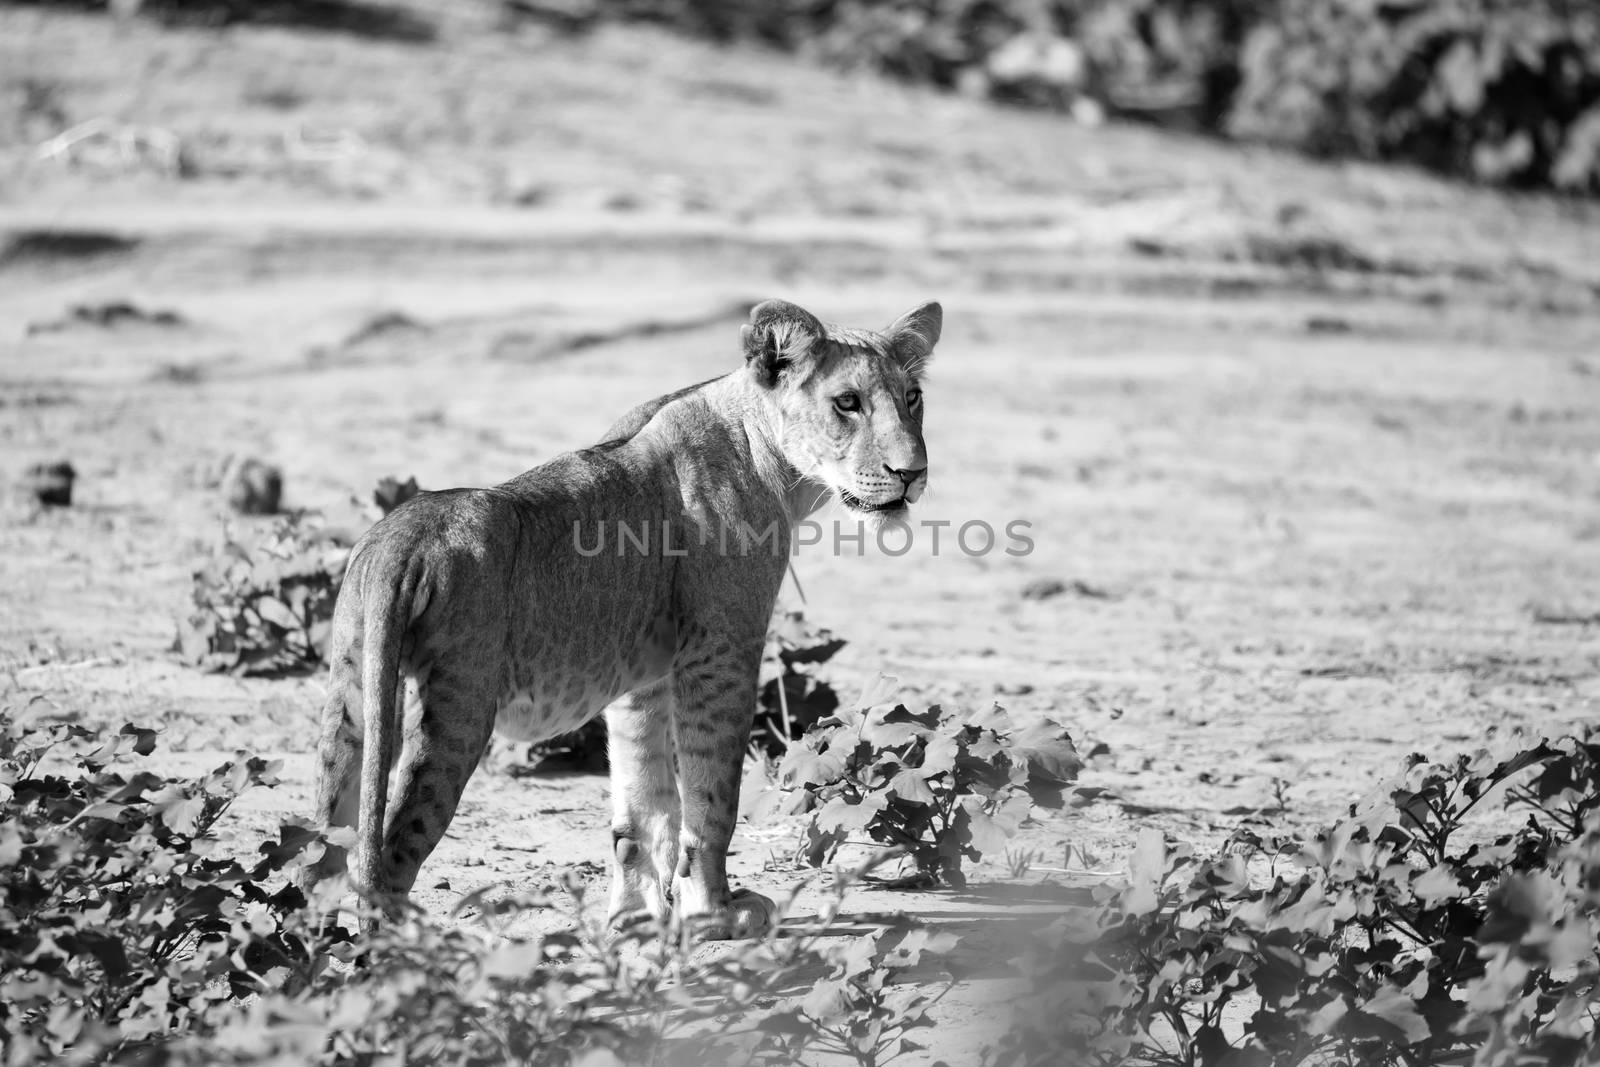 A lion walks through the savannah in Kenya by 25ehaag6